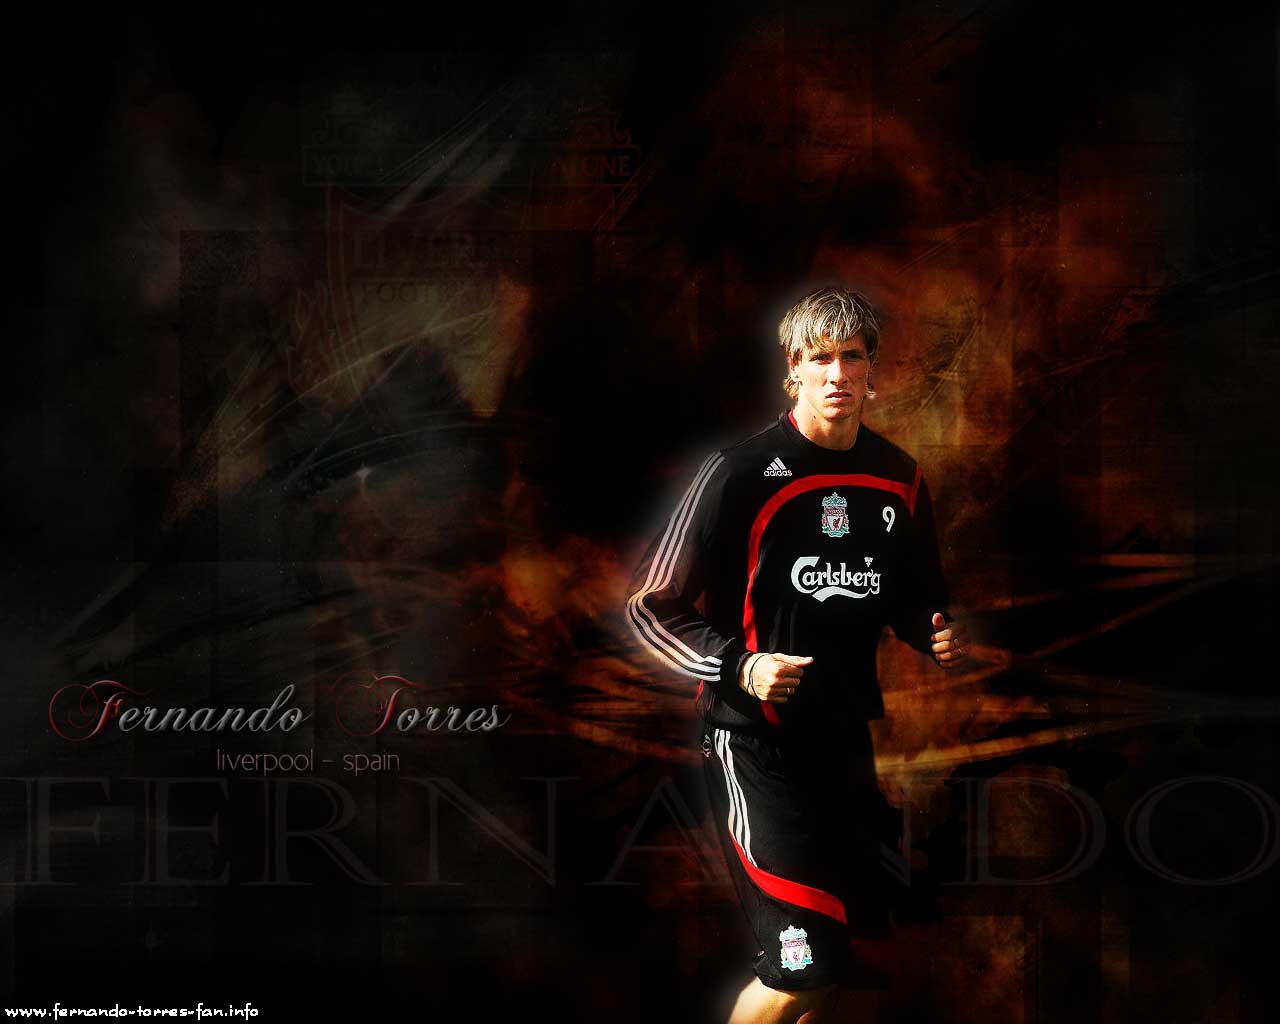 torres fondo de pantalla,jugador de fútbol,oscuridad,fotografía con flash,fuente,fotografía